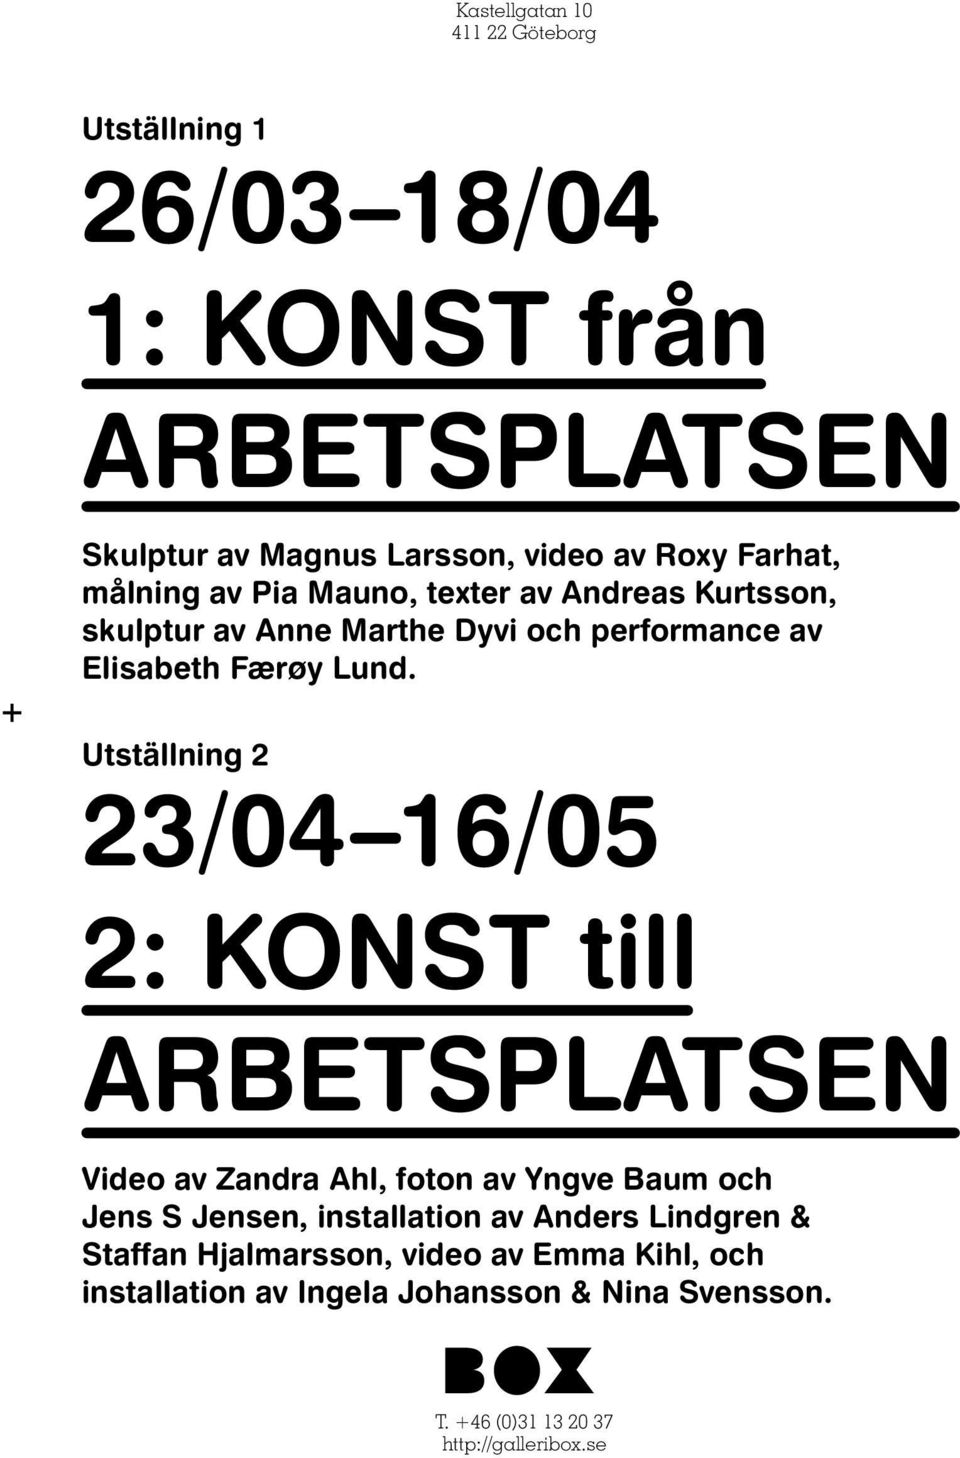 + Utställning 2 23/04 16/05 2: KONST till ARBETSPLATSEN Video av Zandra Ahl, foton av Yngve Baum och Jens S Jensen, installation av